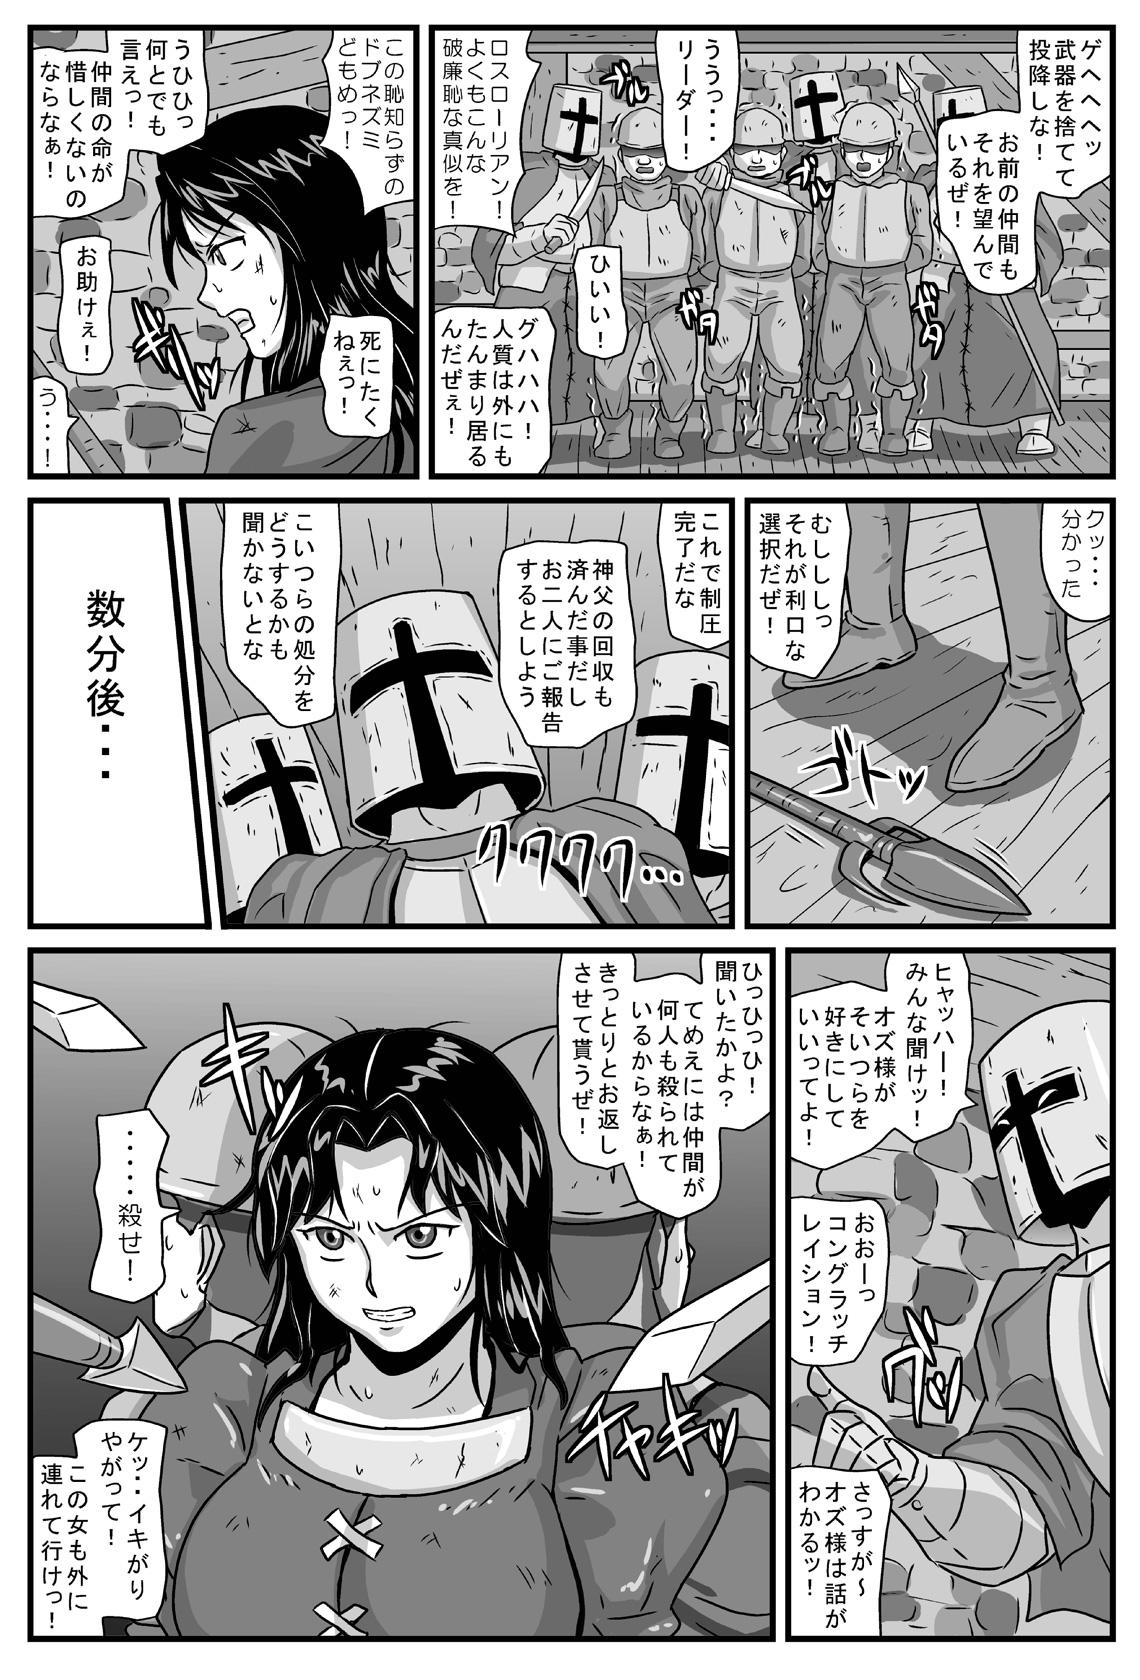 Ink Guerrilla no Onna Leader wa Honoo no 26-sai Kurokami Shojo - Tactics ogre Cut - Page 3